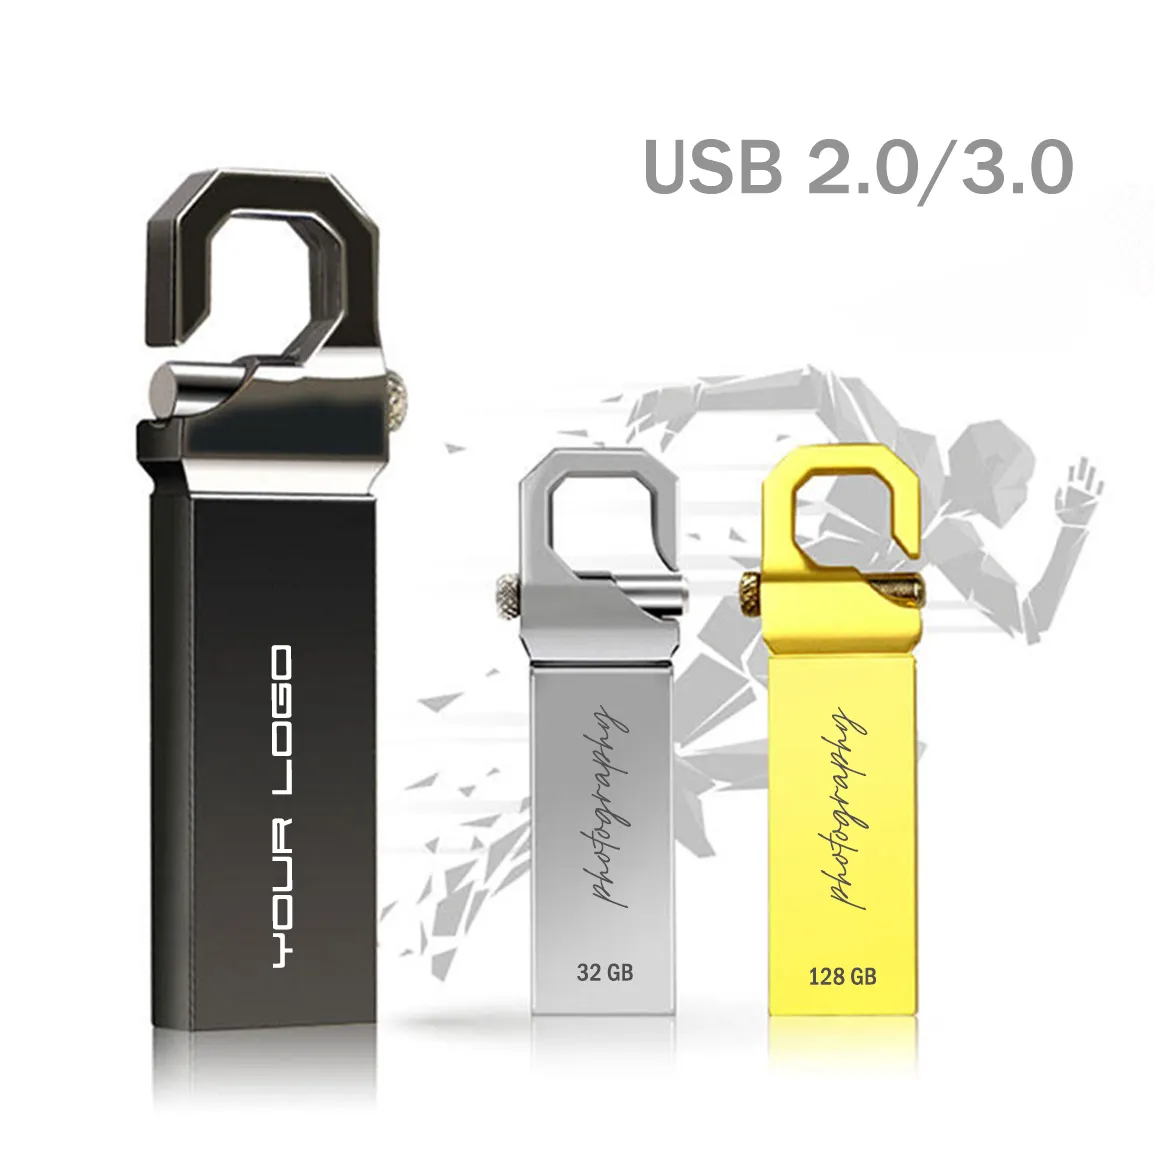 SupeFlash più economico ad alta velocità Promo Cle Memorias regalo chiavetta USB Pendrive 512MB 1GB 128GB 1TB chiavetta USB in metallo Whosale